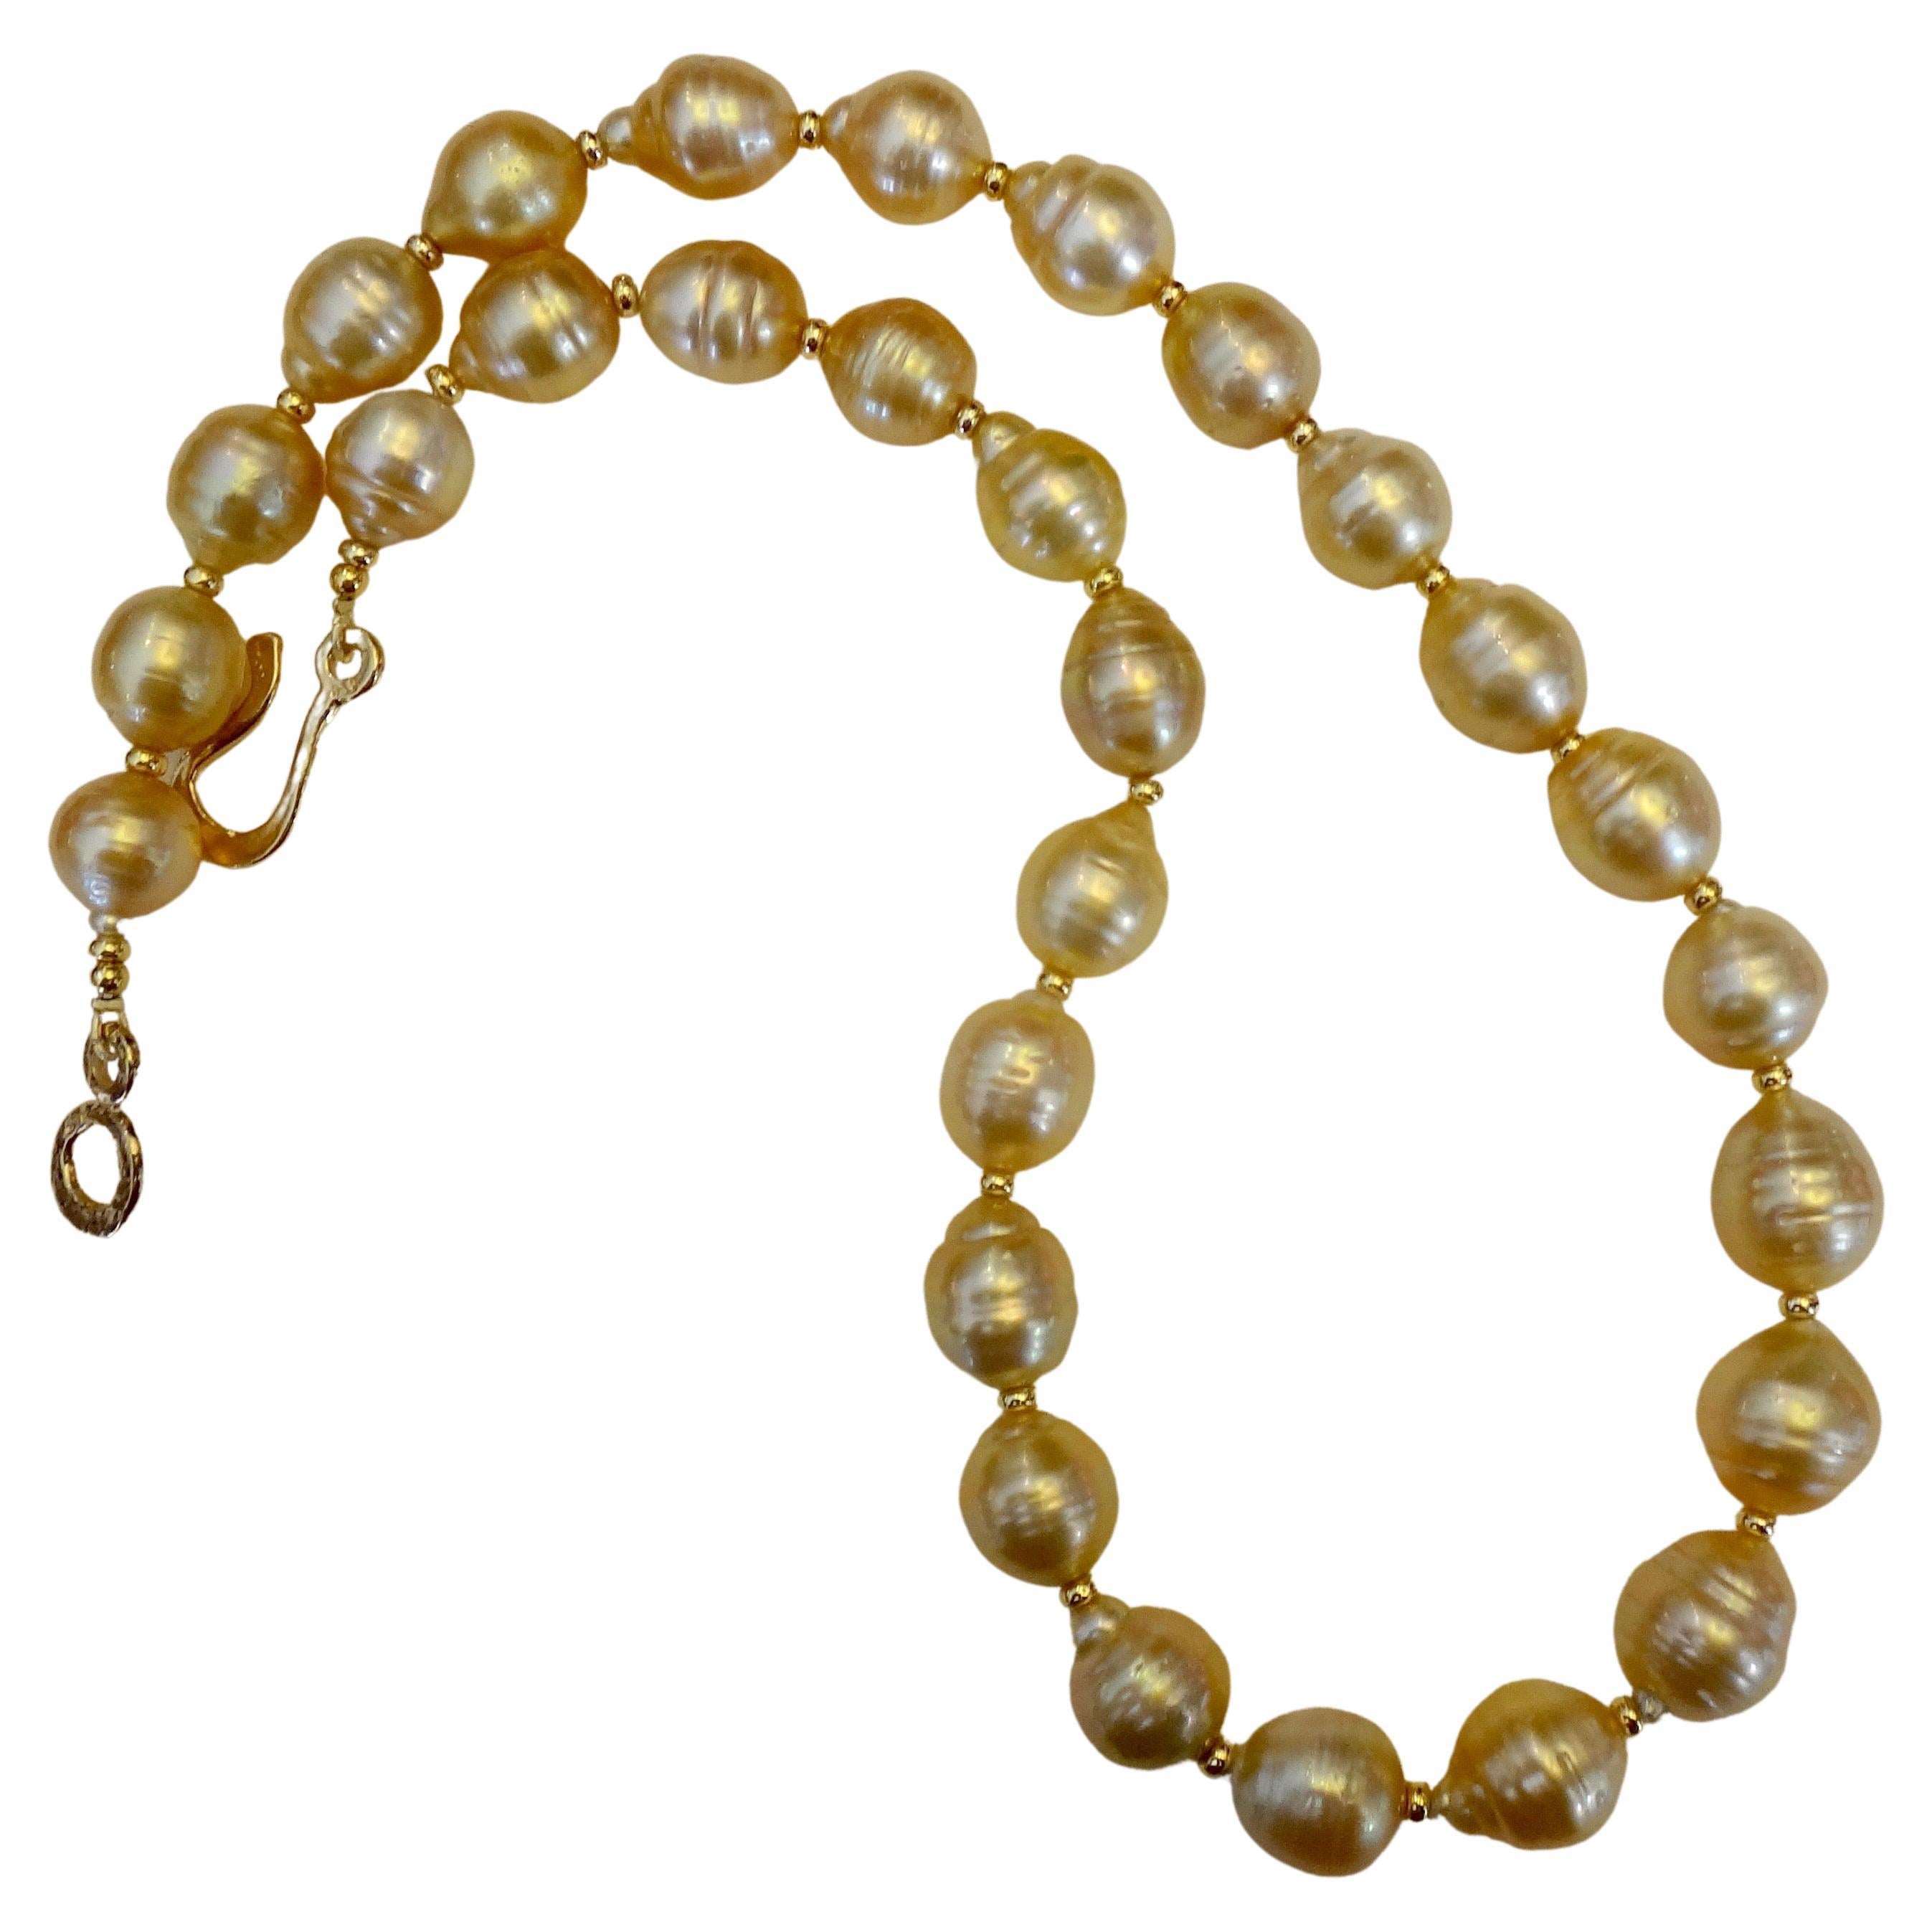 Michael Kneebone, collier de perles baroques indonésiennes dorées